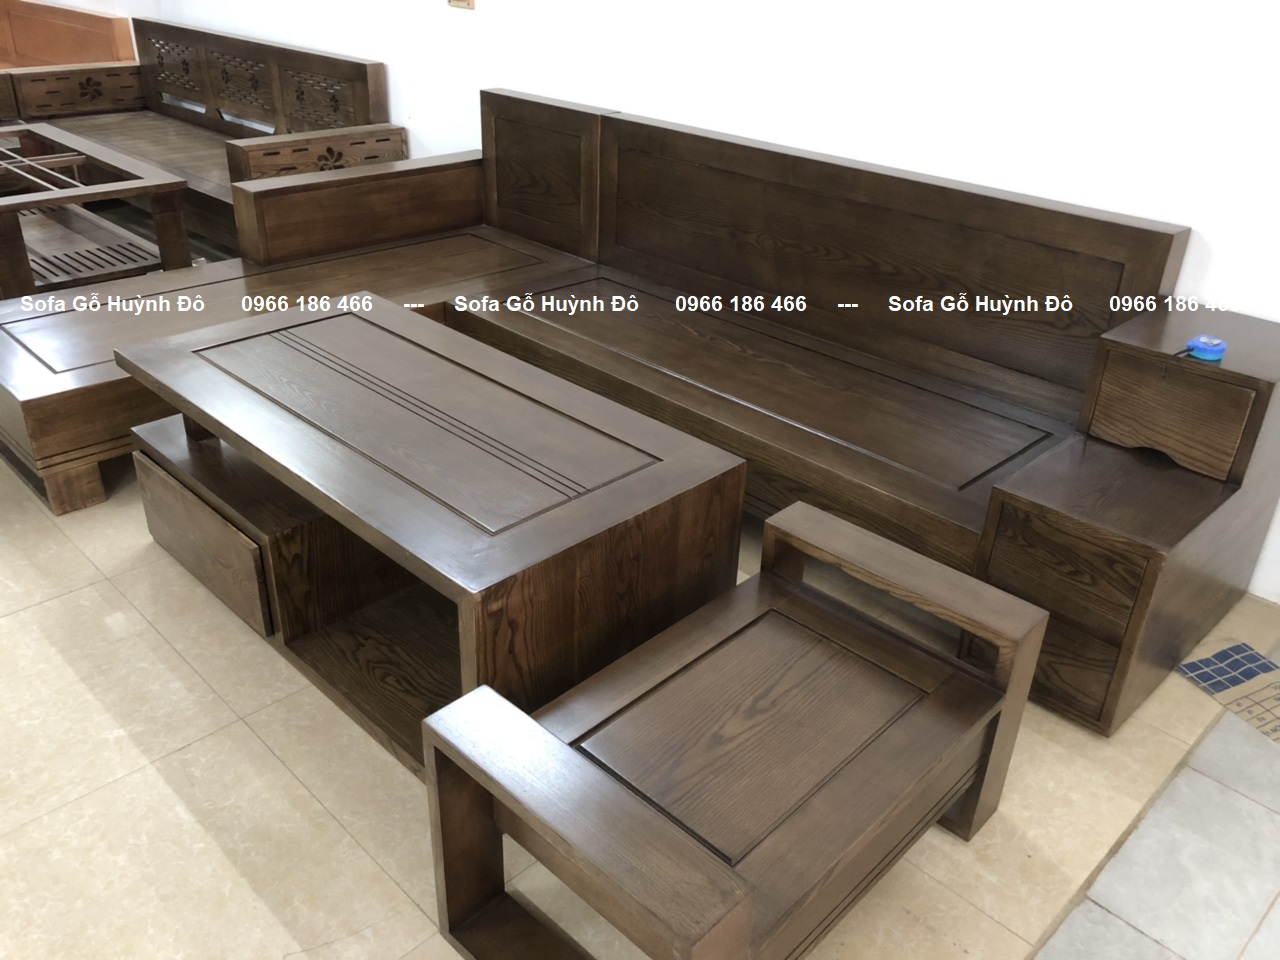 Bộ bàn ghế gỗ phòng khách giá rẻ là món quà tuyệt vời cho những ai yêu thích phong cách trang trí cổ điển. Chất liệu gỗ tự nhiên mang đến sự ấm áp và thân thiện cho không gian sống. Bên cạnh đó, sự kết hợp giữa màu sắc và hoạ tiết trên sản phẩm khiến nó thực sự nổi bật.